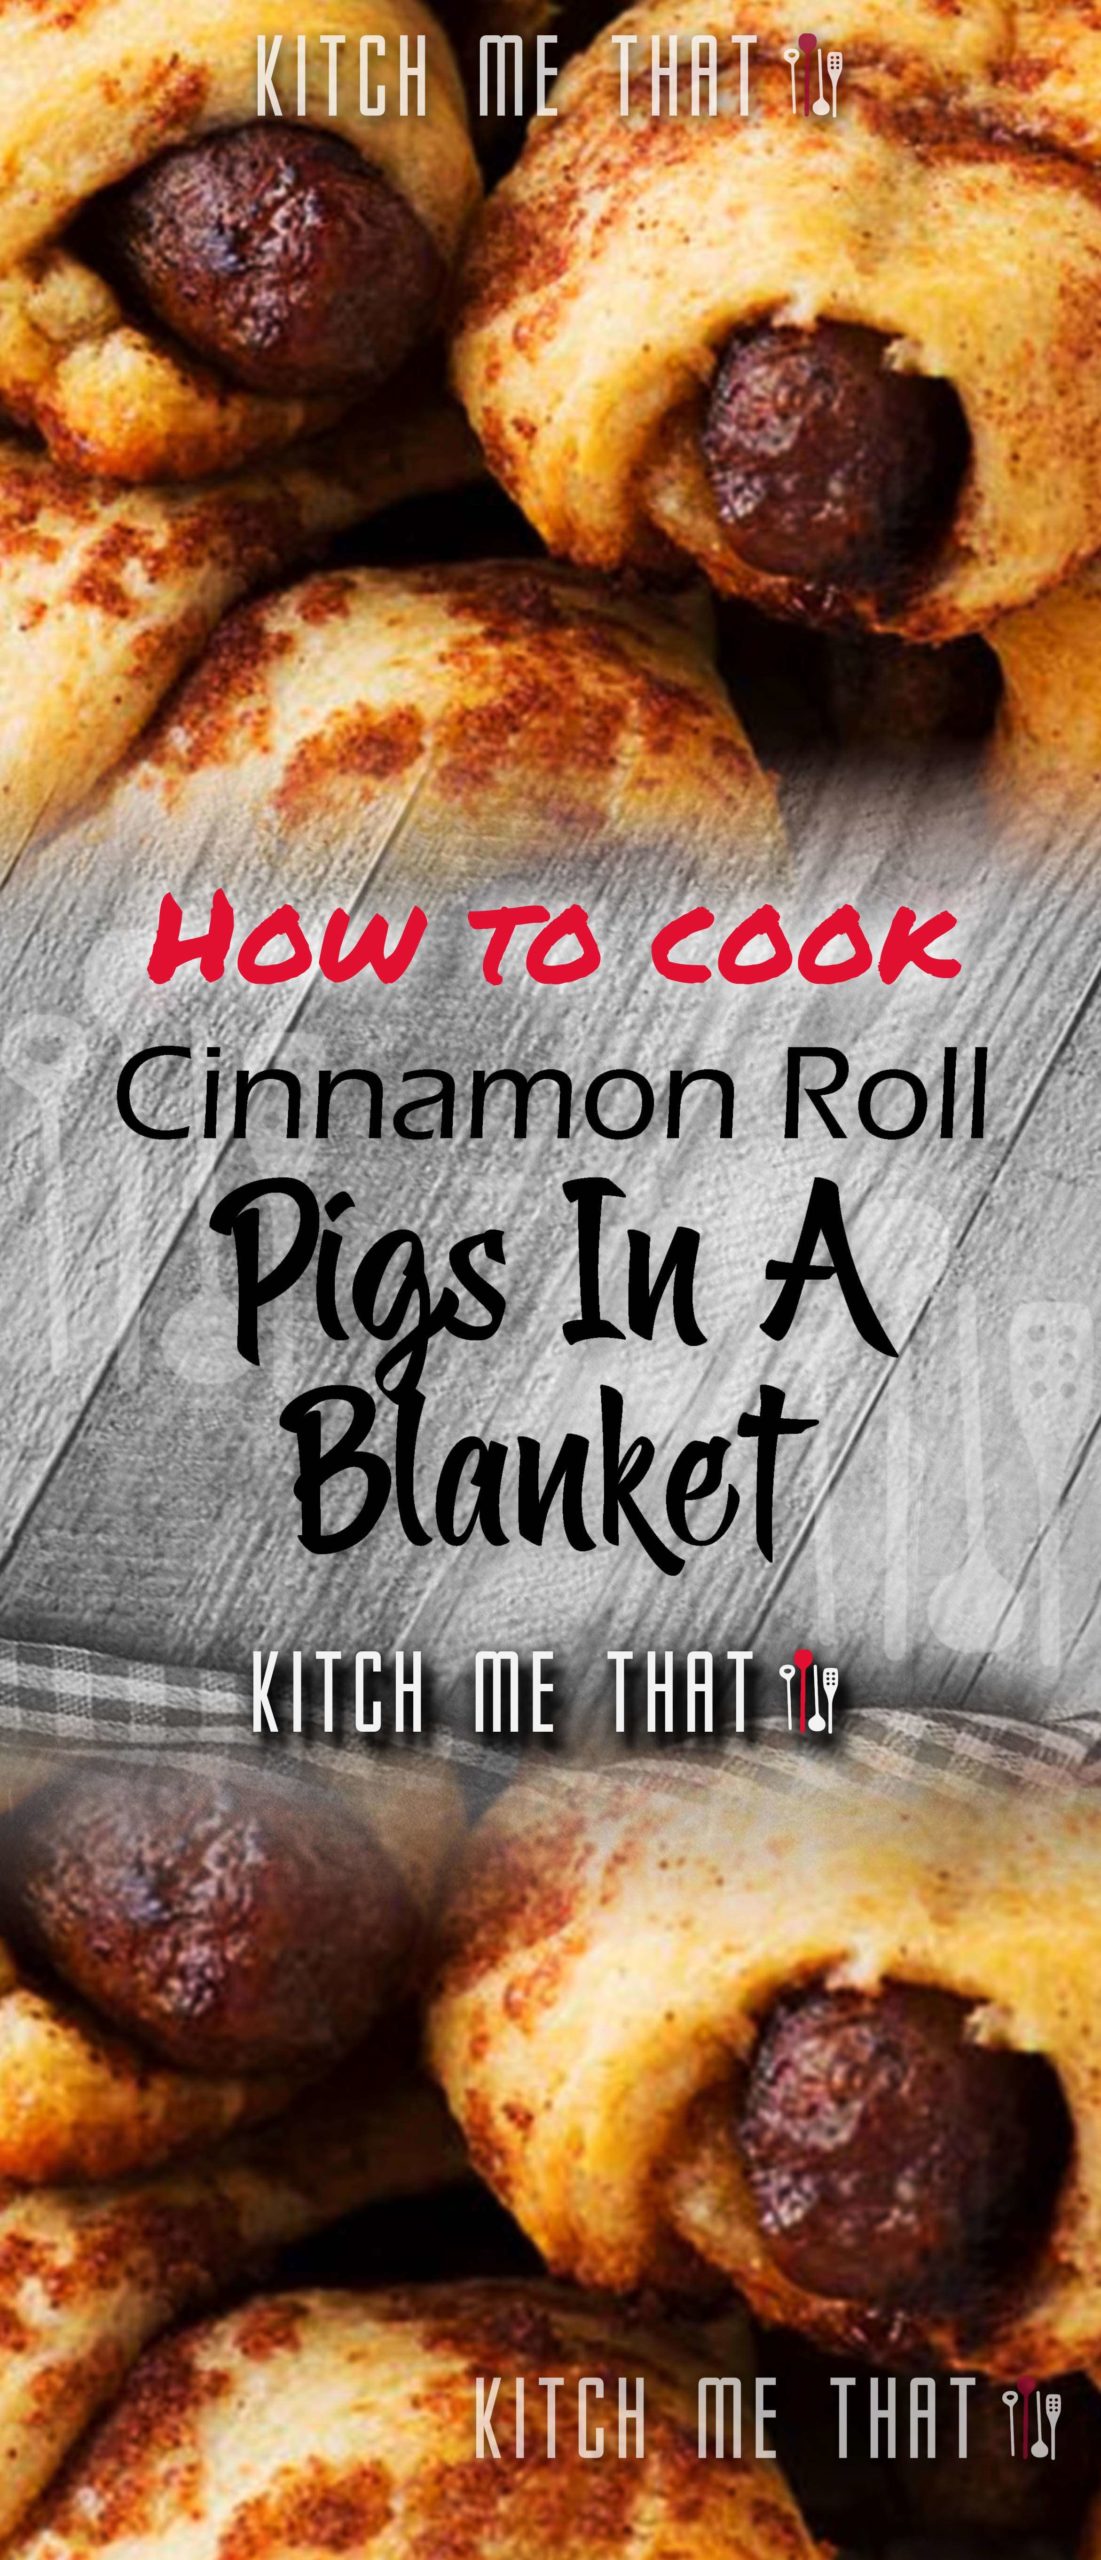 Breakfast Cinnamon Roll Pigs-In-A-Blanket